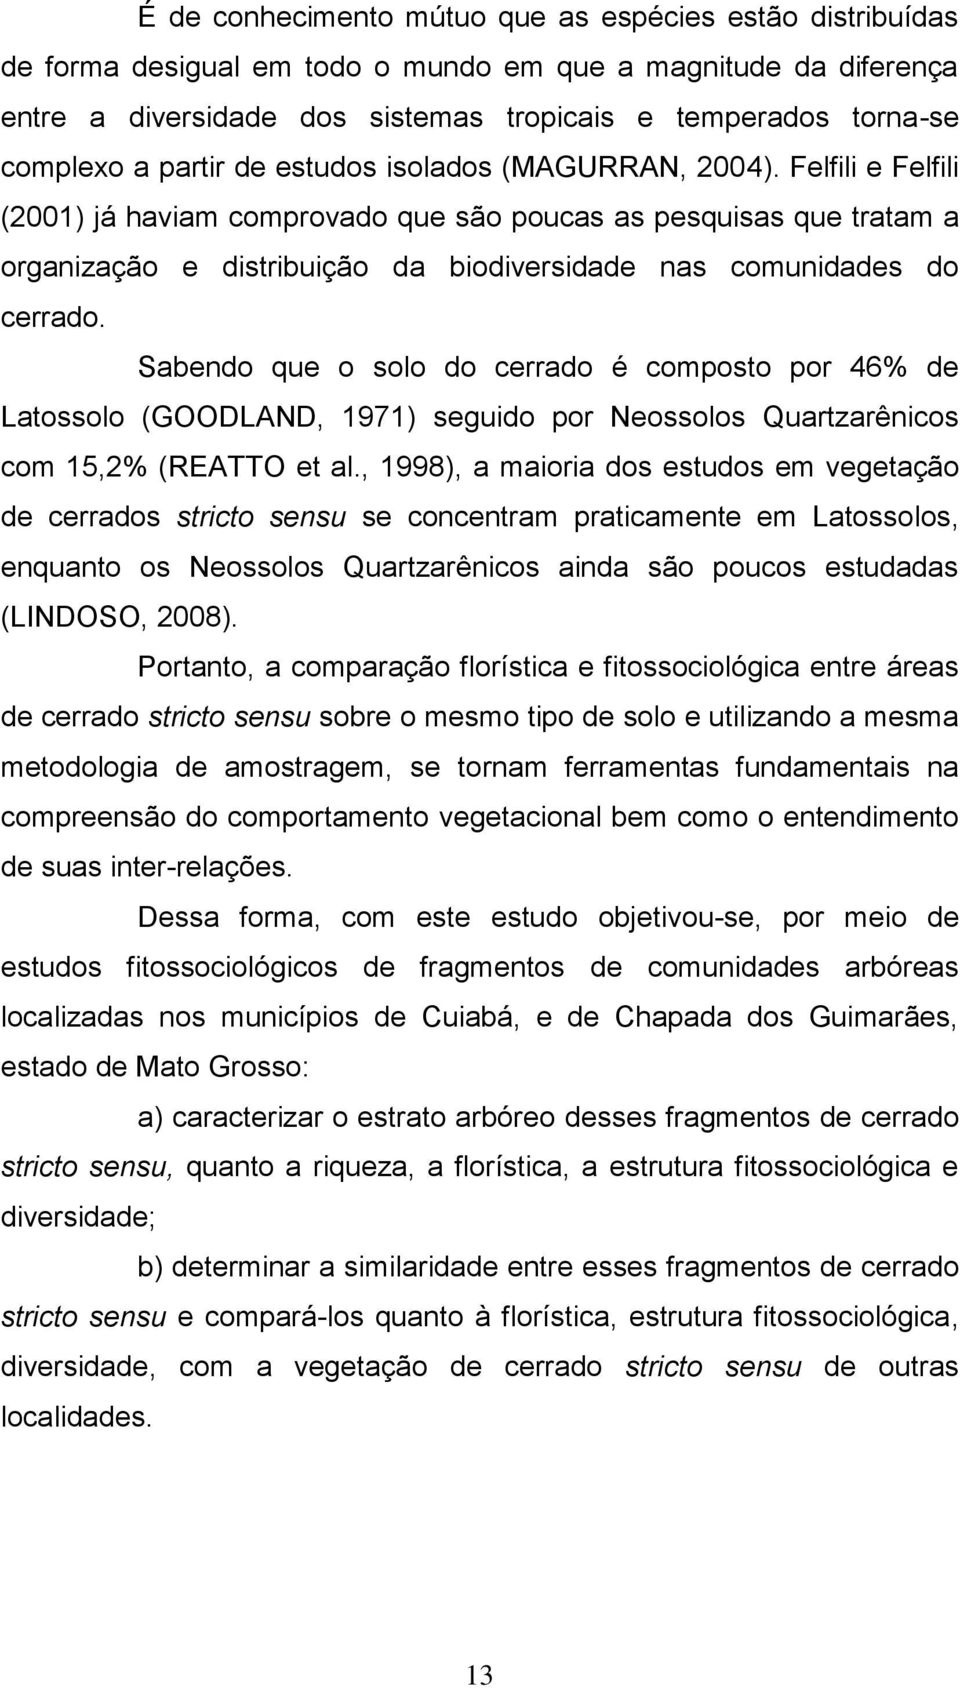 Felfili e Felfili (2001) já haviam comprovado que são poucas as pesquisas que tratam a organização e distribuição da biodiversidade nas comunidades do cerrado.